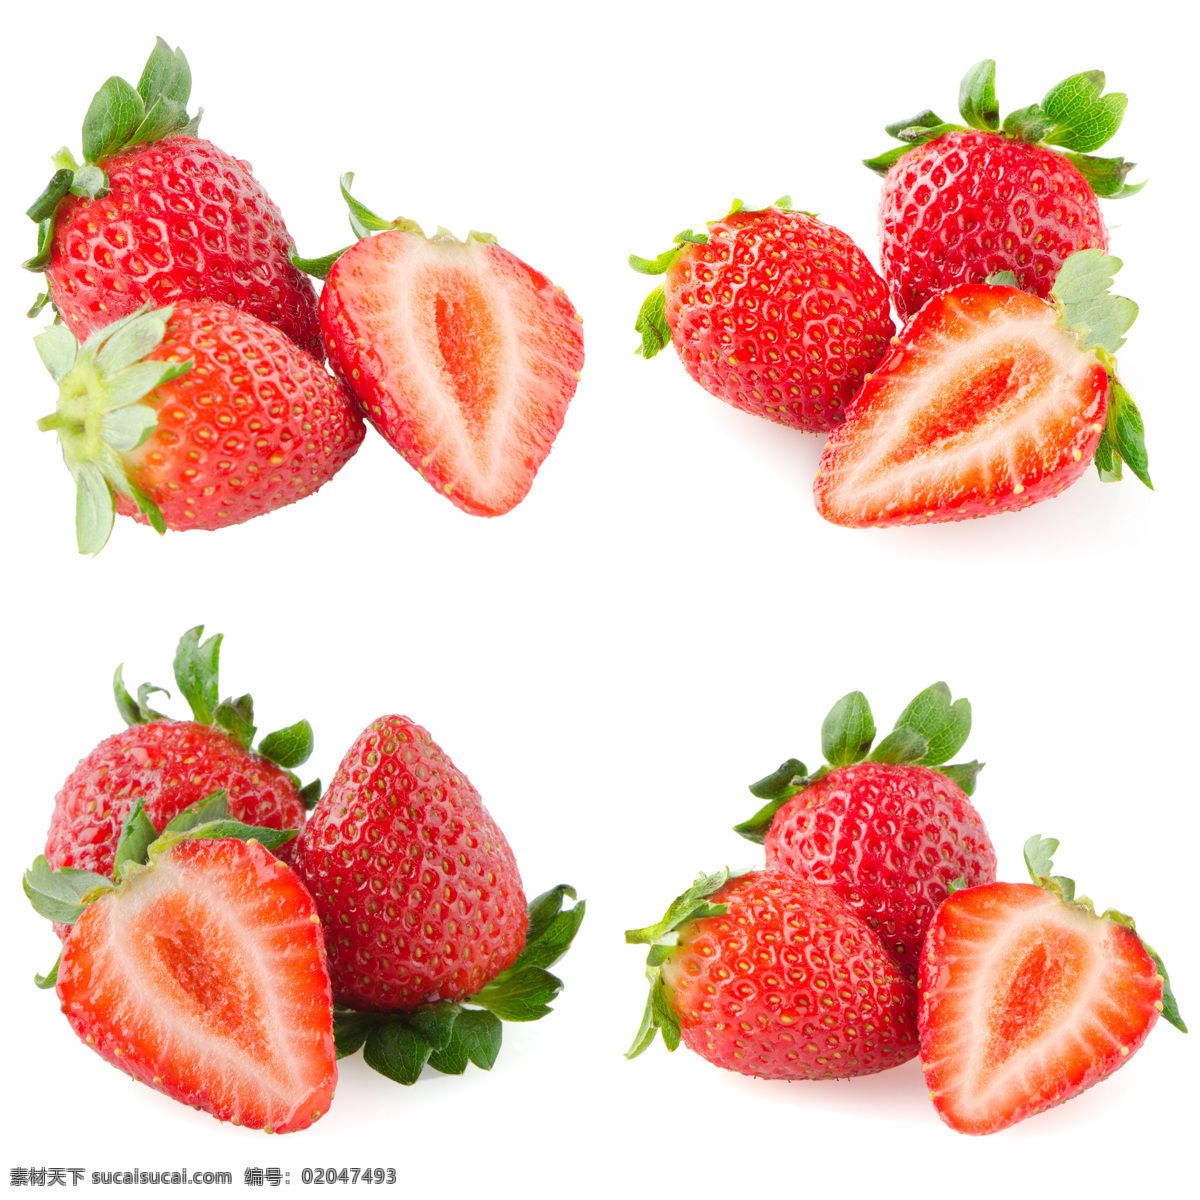 草莓图片 红色草莓 奶油草莓 双流冬草莓 红草莓 甜 水果 浆果 背景 标签 草莓素材 草莓棚拍 草莓背景图片 草莓设计 生物世界